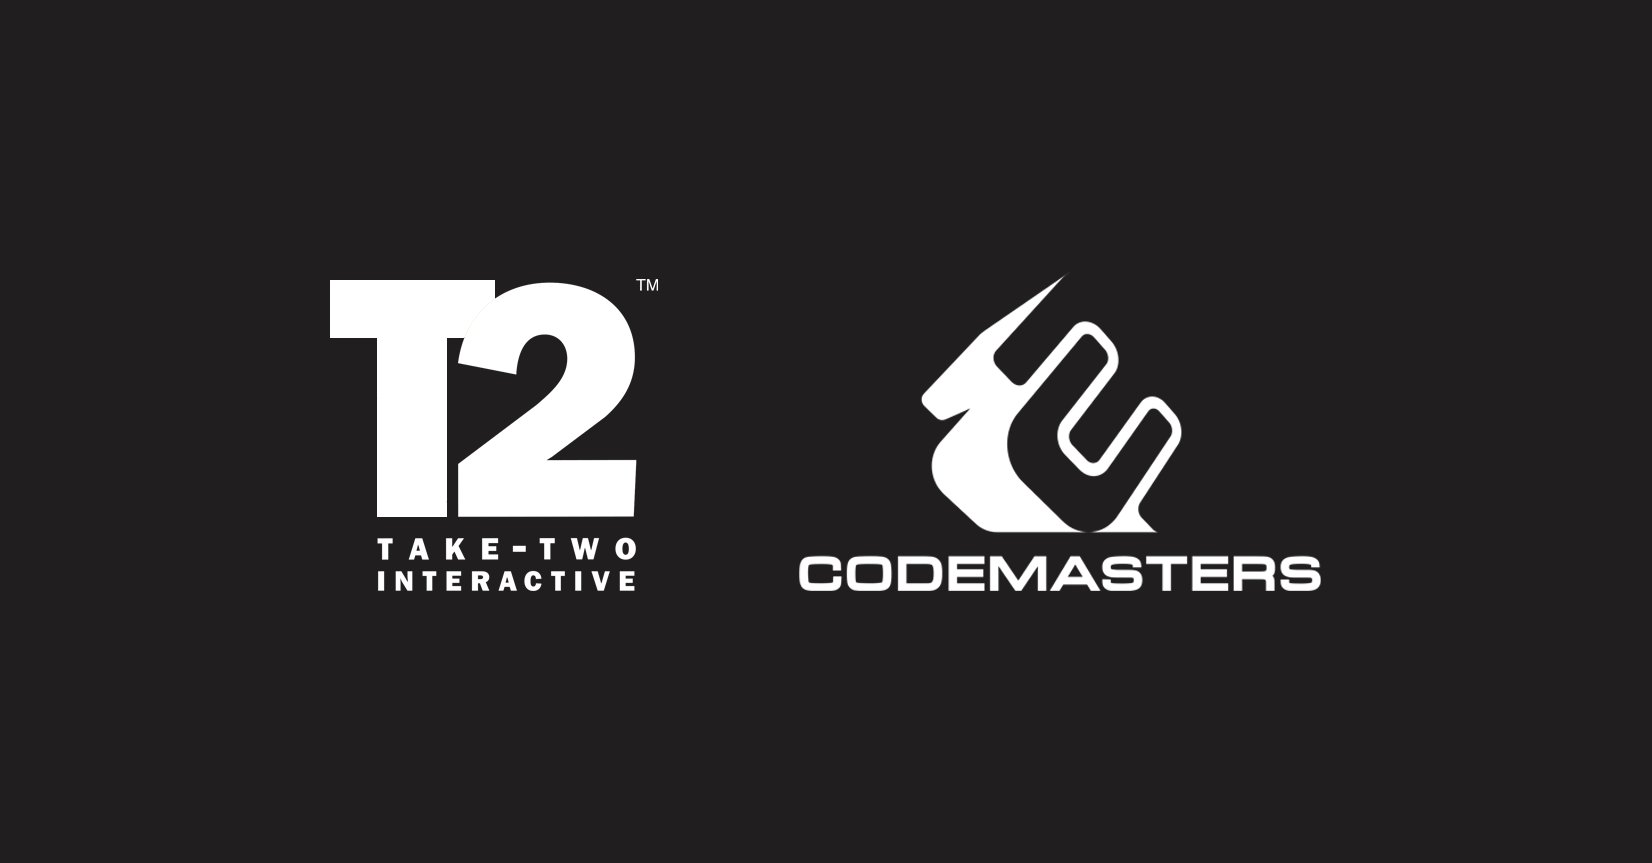 Take-Two Interactive Acquires Codemasters kasama ang Deal na Kumukumpleto noong 2021: Ibig Mo Bang Maging Mas Maayong Mga Pamagat Mula Sa Parehong Mga Kumpanya?